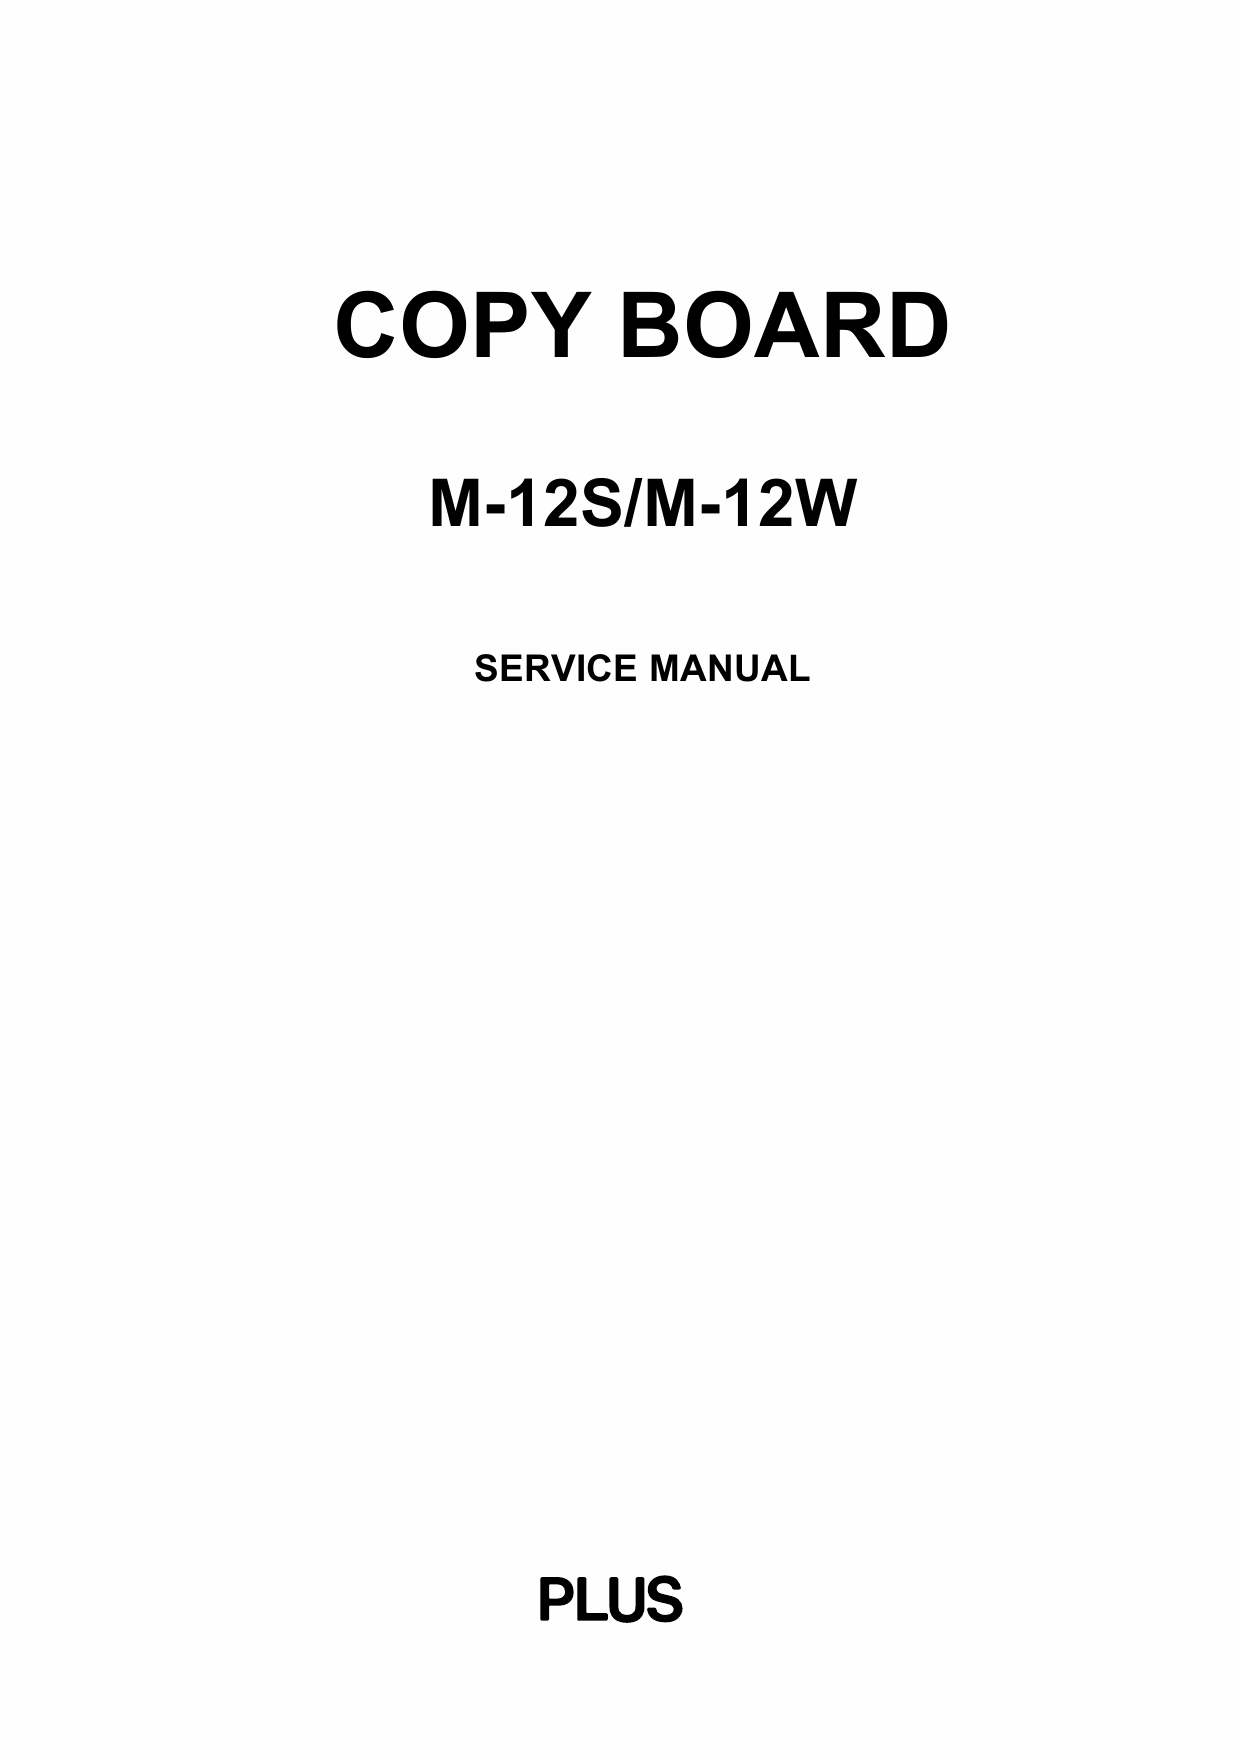 Konica-Minolta magicolor CopyBoard M-12S M-12W Service Manual-1